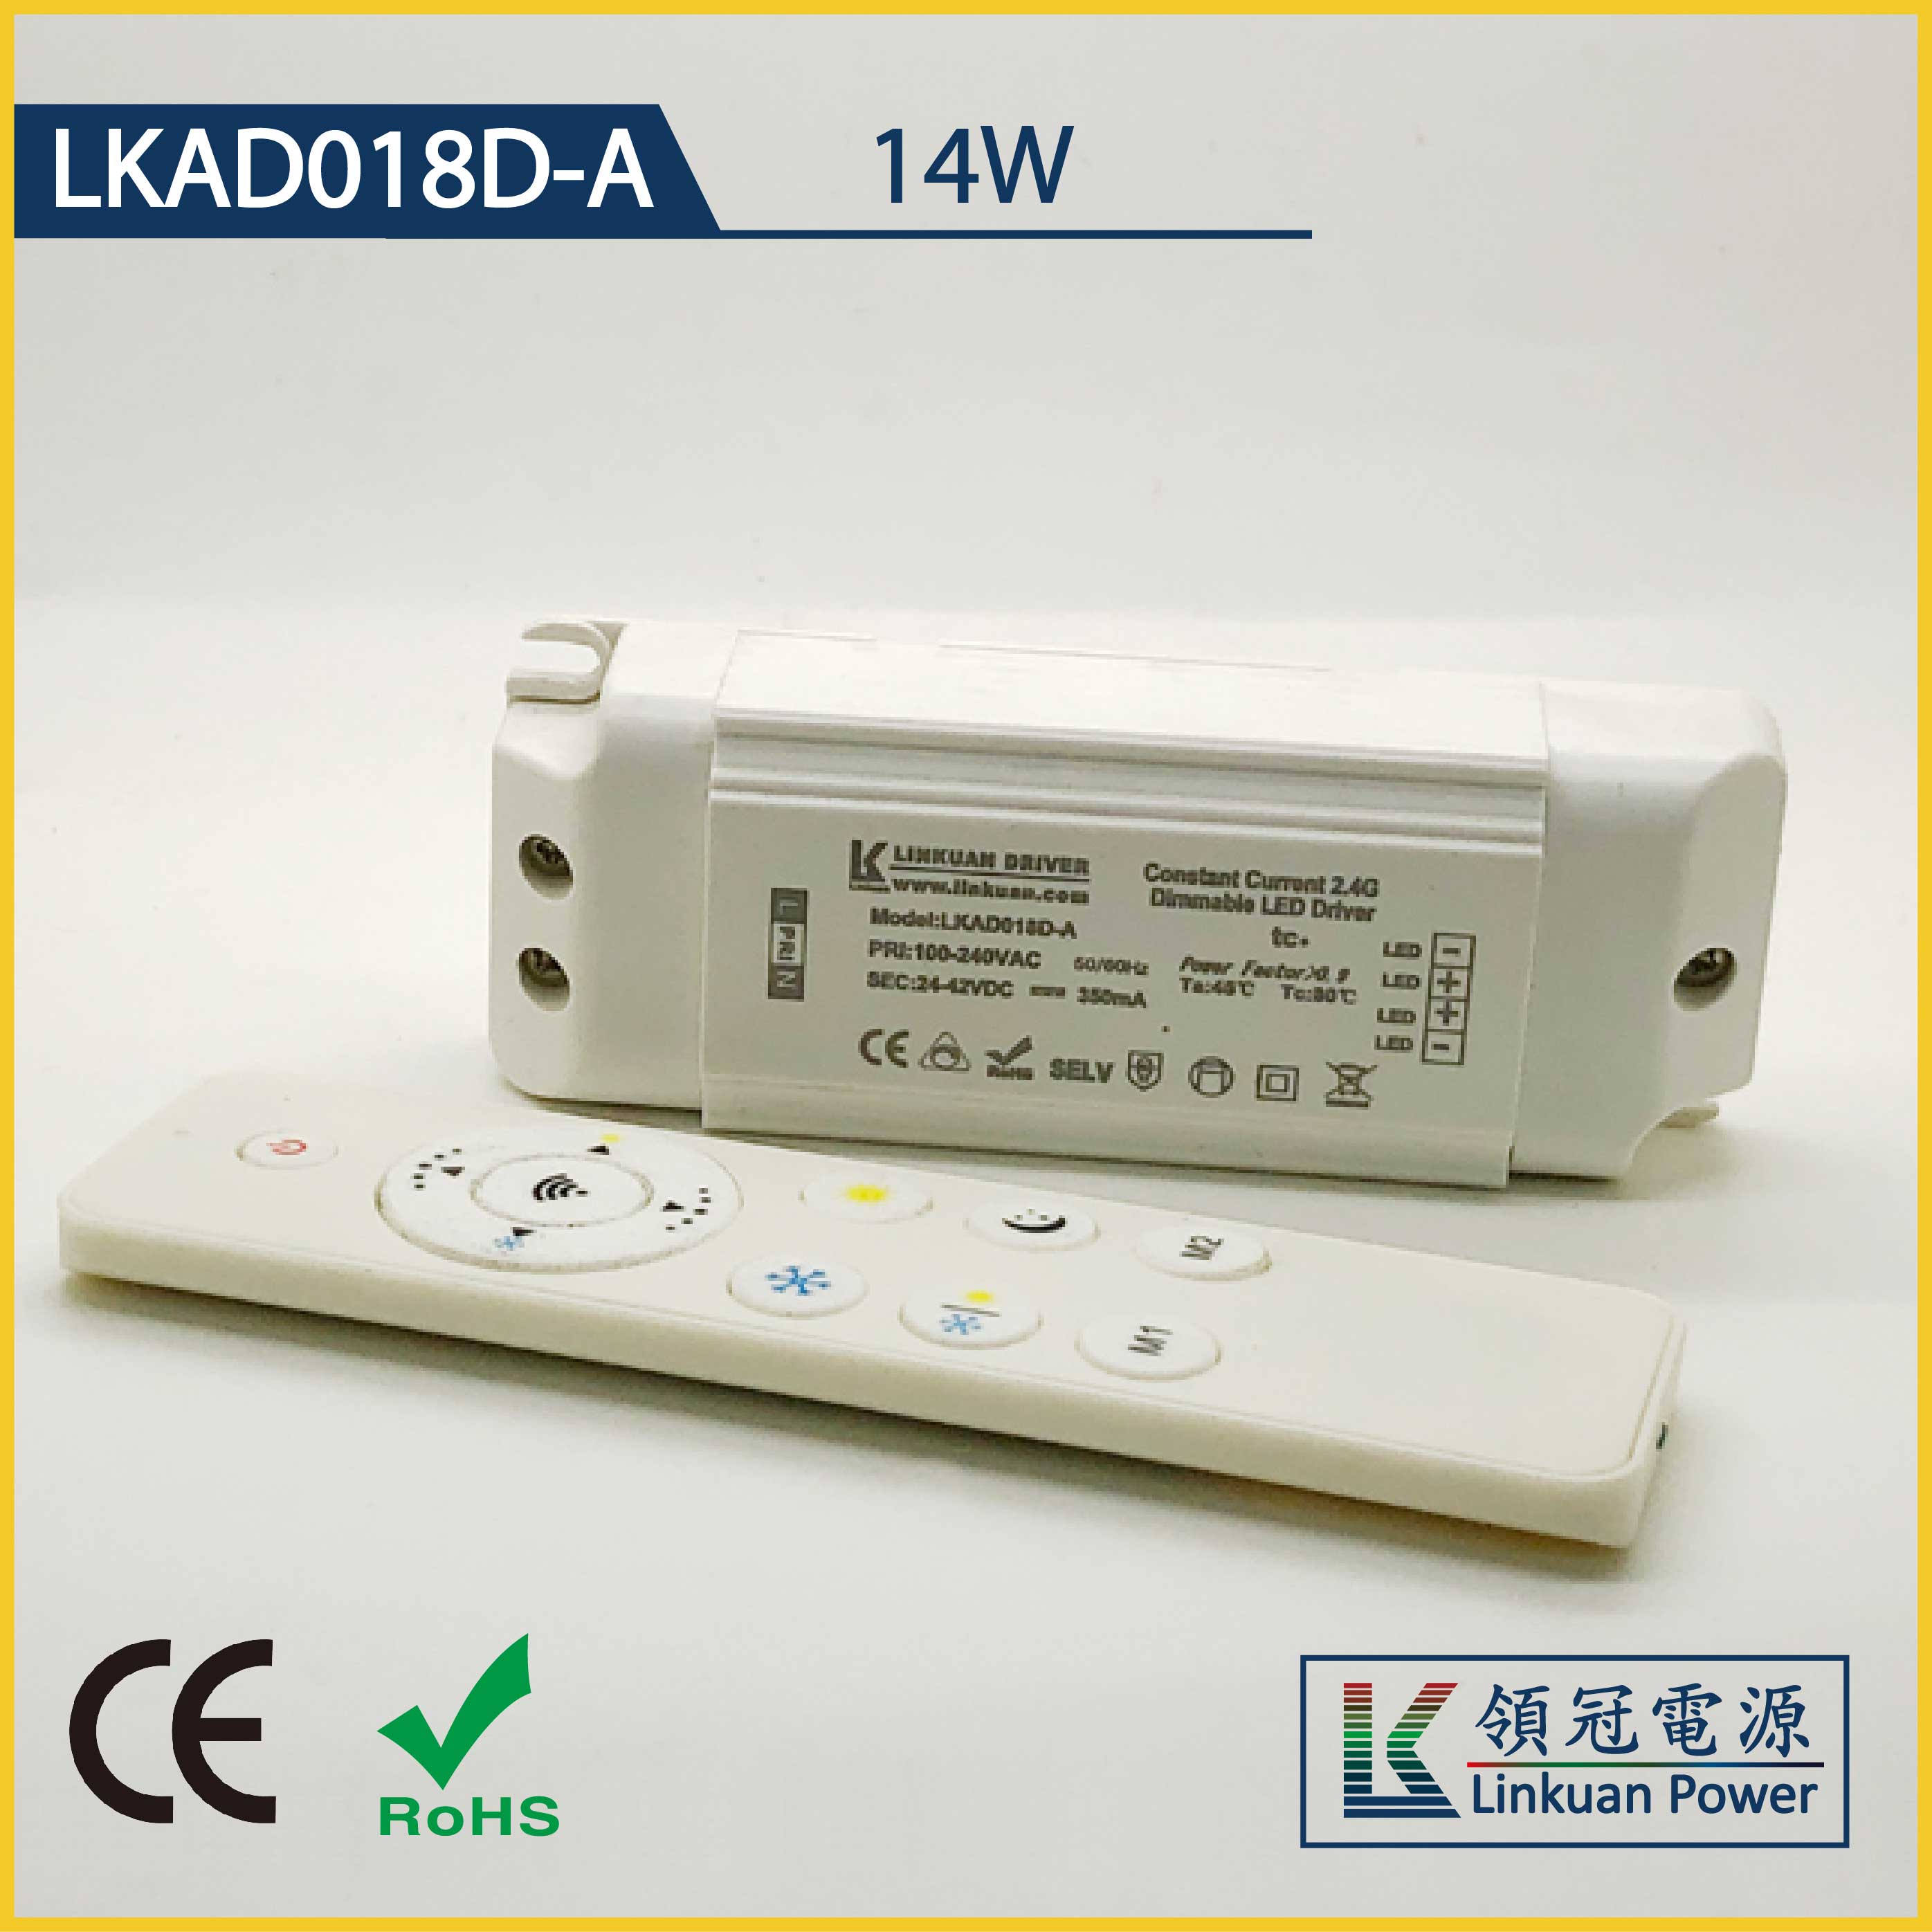 LKAD018D-A 14W 5-42V 350mA CCT Adjusting LED drivers